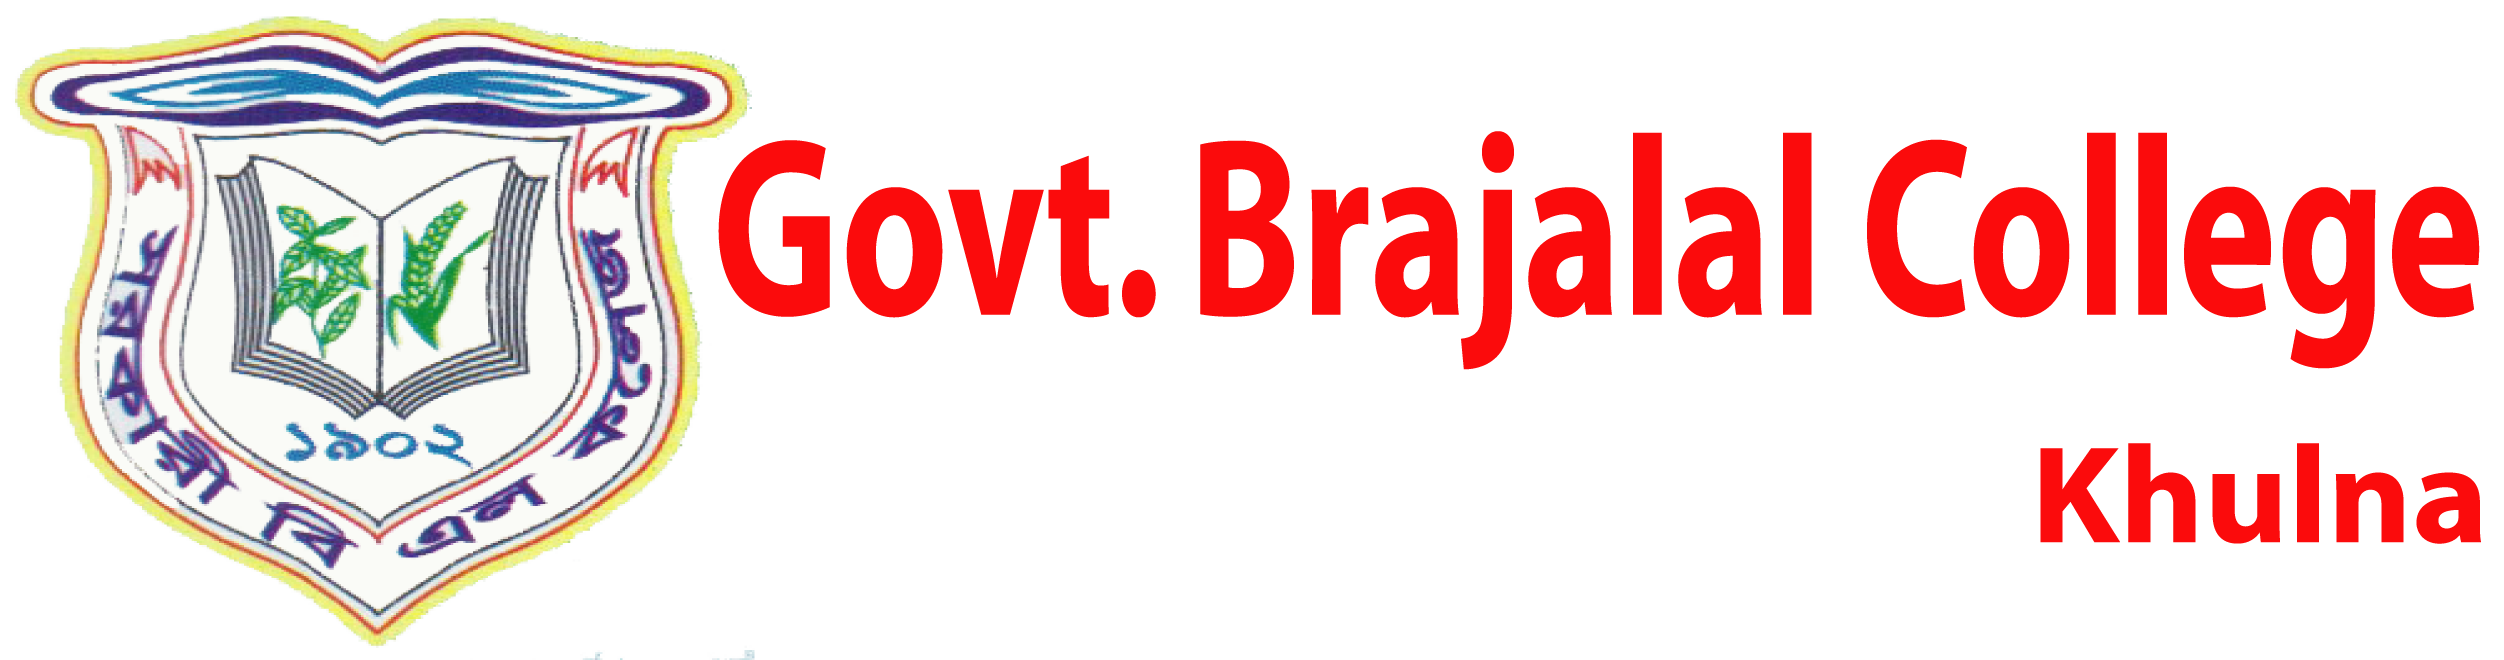 Govt. Brajalal College - Top 10 Govt. College In Bangladesh